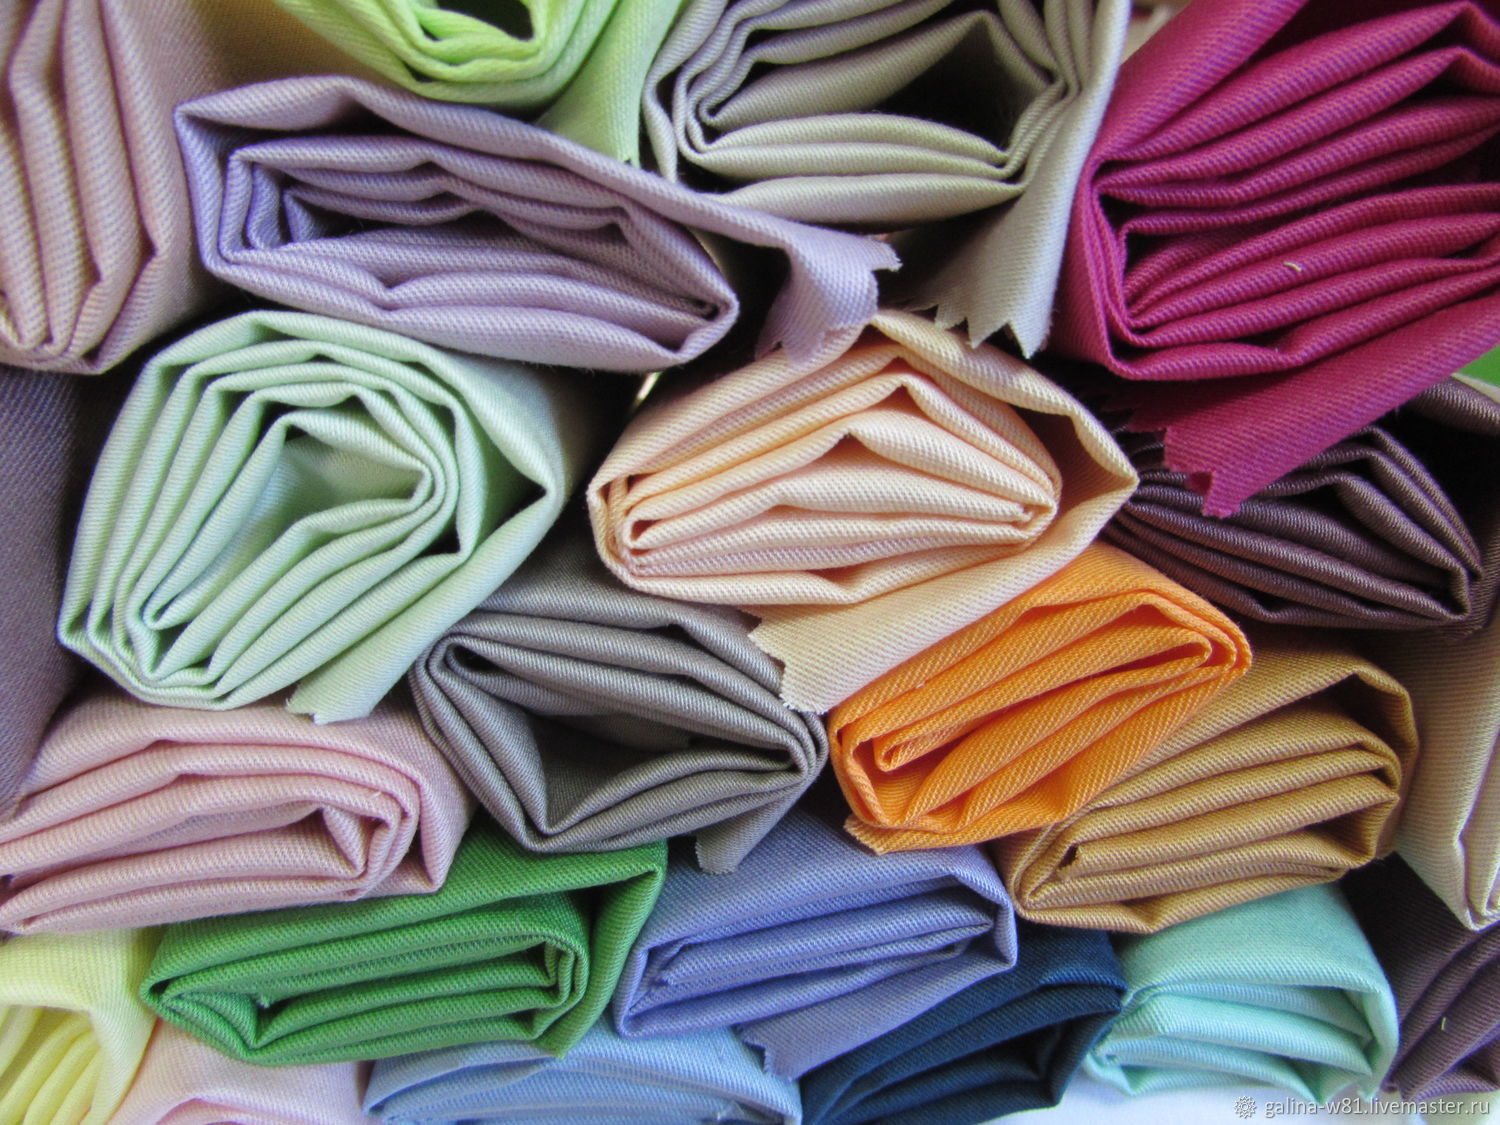 Сайты производителей тканей. Производители ткани. Производители тканей в России. Сатин ткань юбка. Сатин ткань стопка.